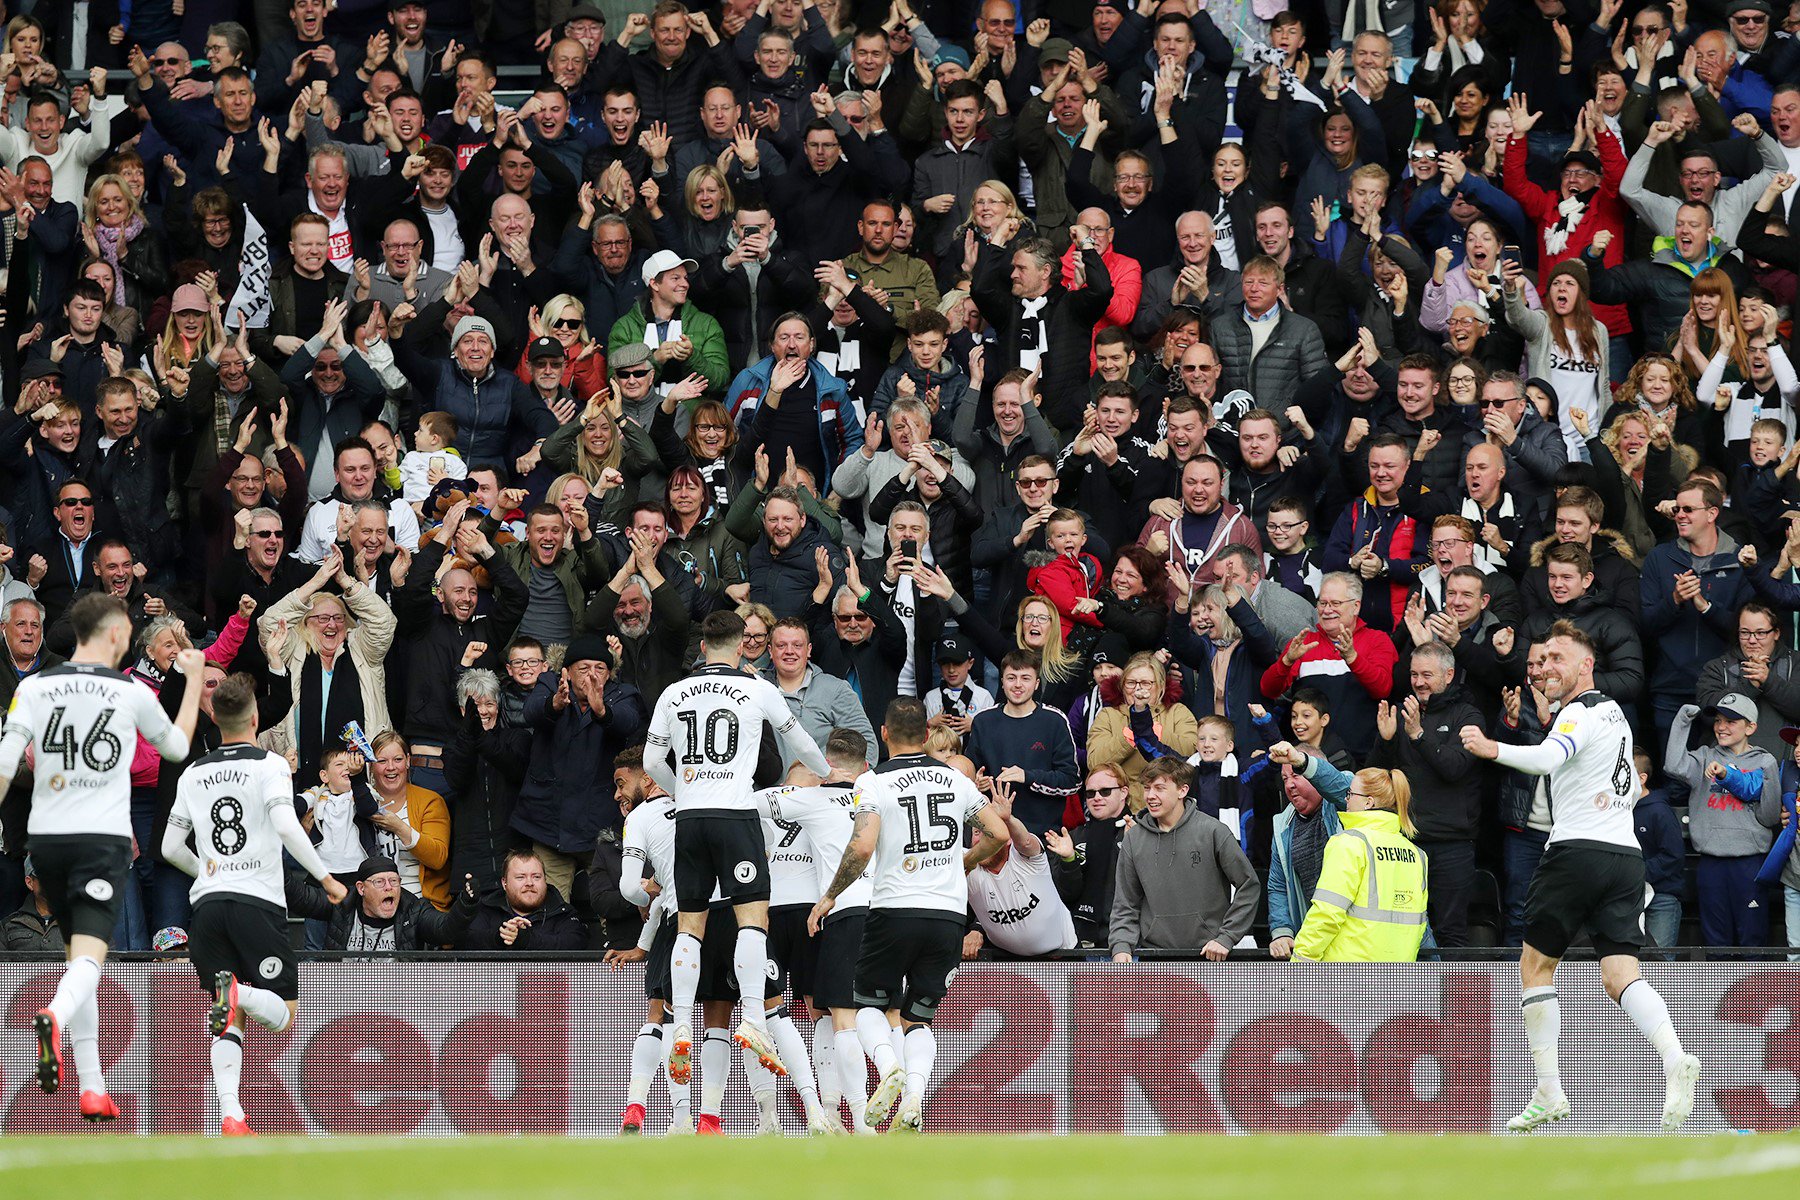 Derby County 3-1 West Brom: Đoàn quân của Frank Lampard đoạt vé dự vòng play-off